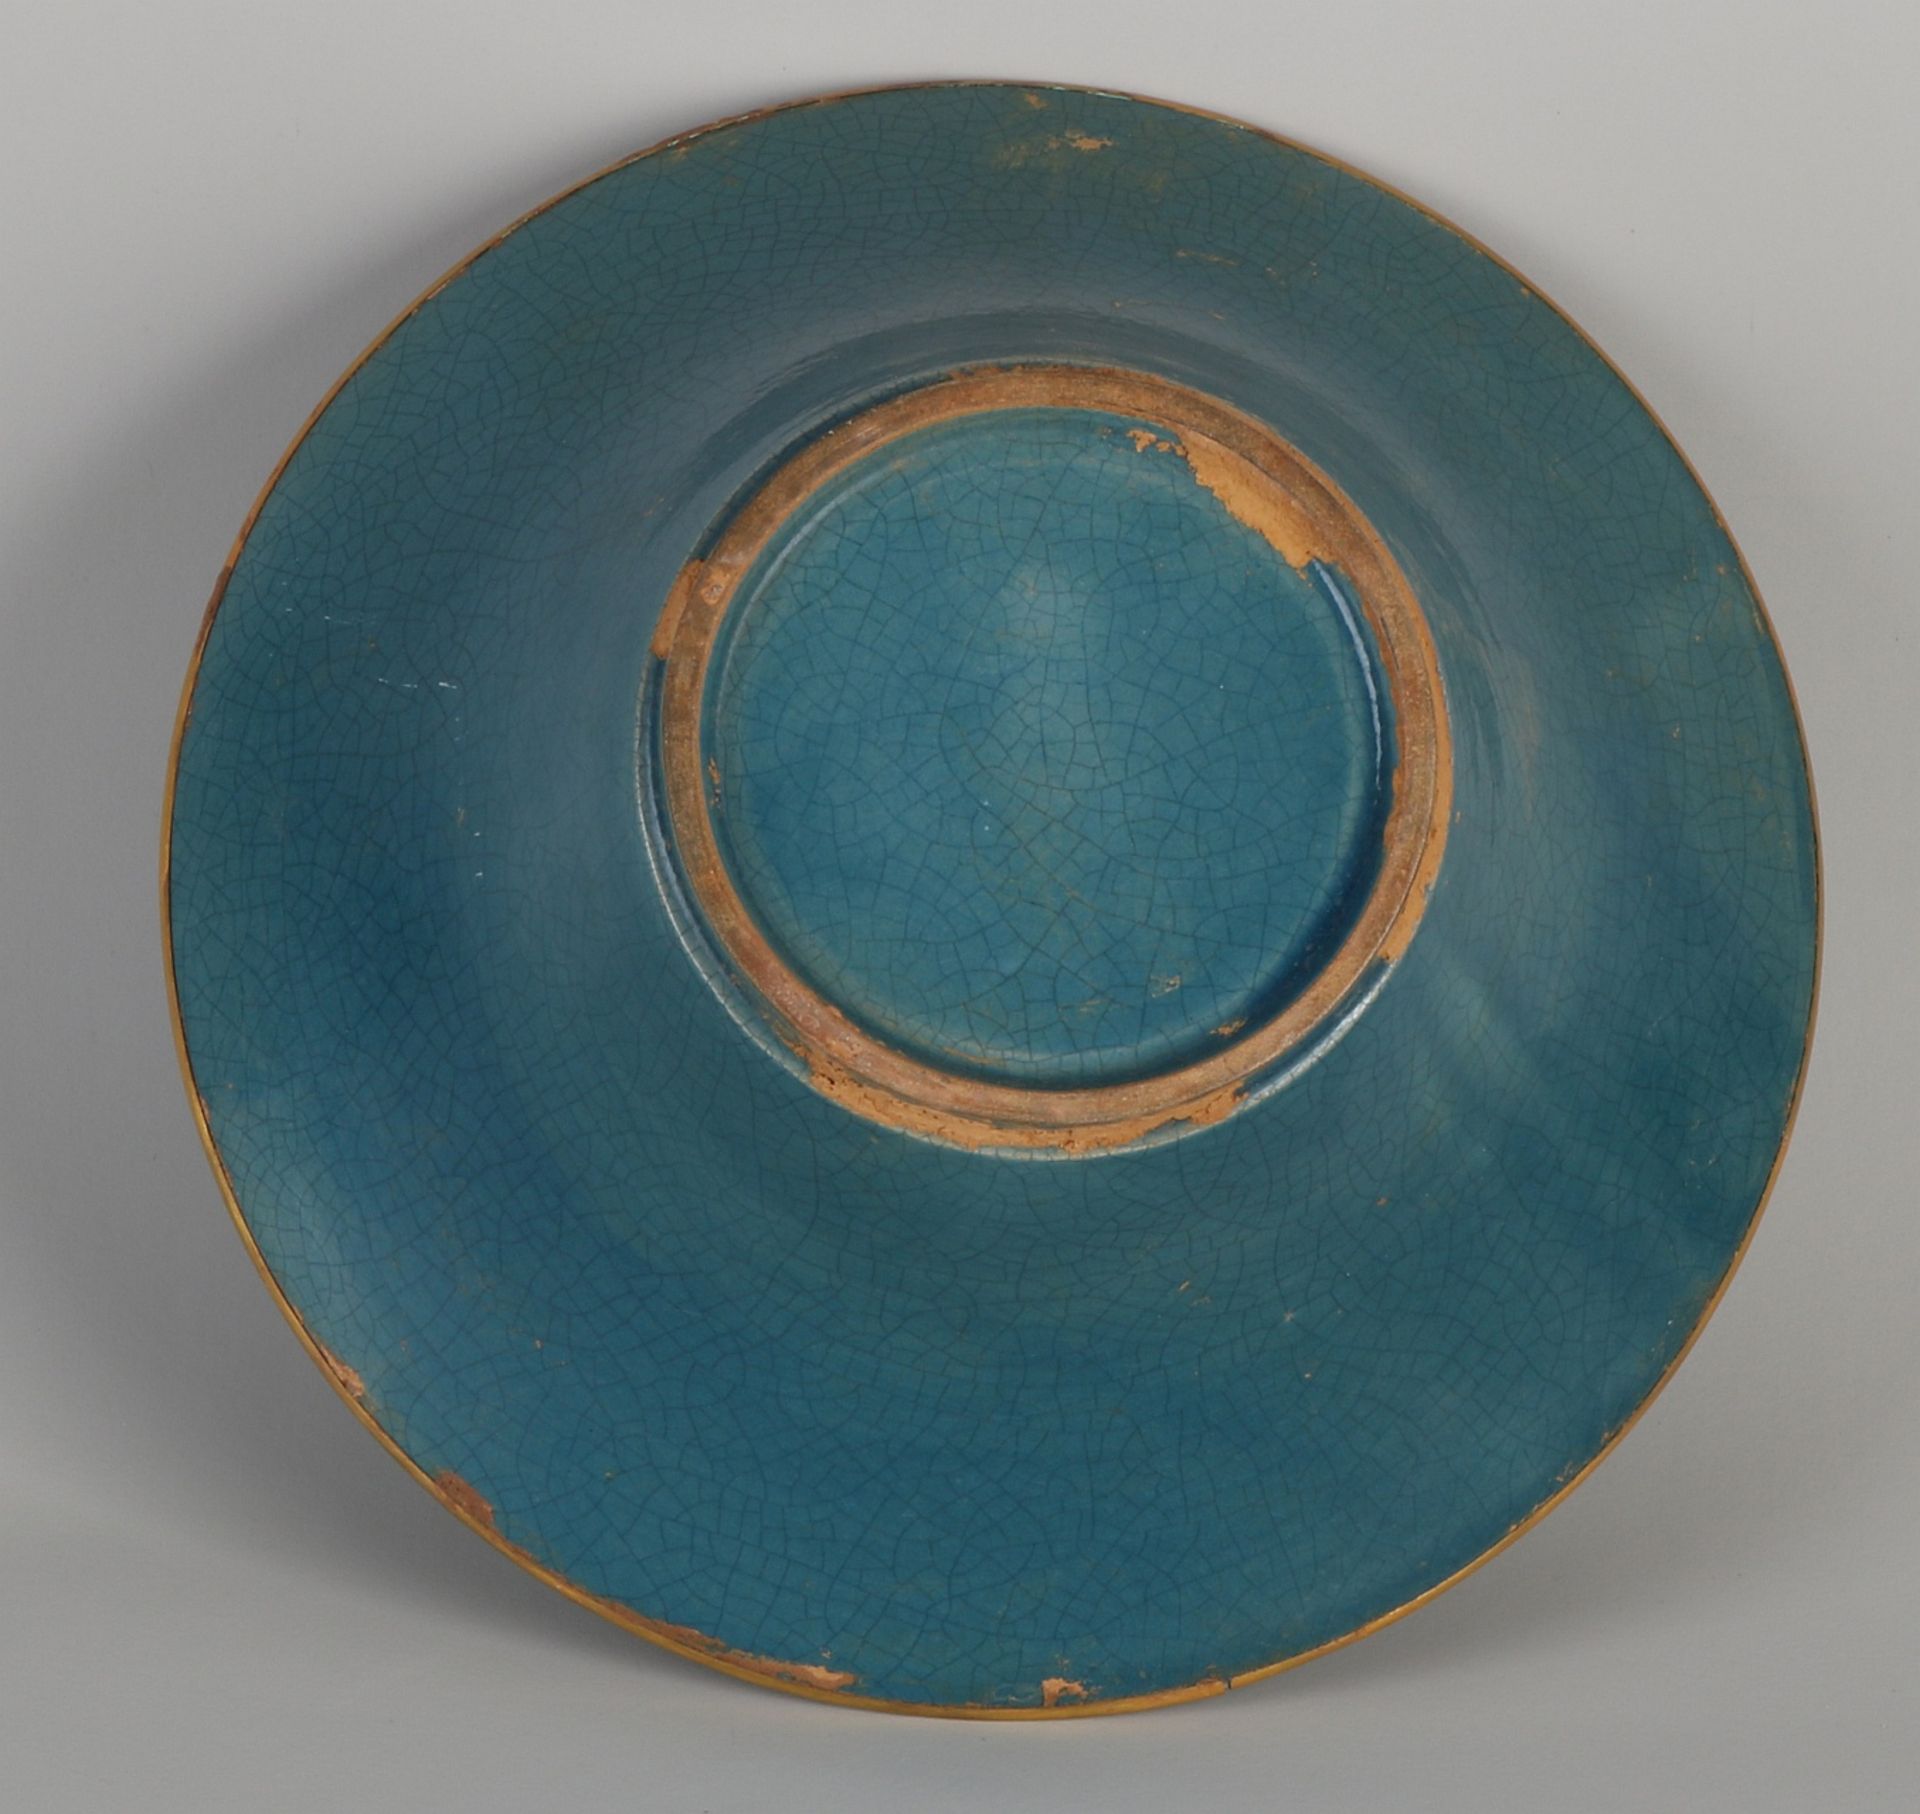 Chinesische Porzellanschale mit blauer Glasur und Goldrelief + Steinen. Abmessungen: H 9 x Ø 22 c - Image 4 of 4